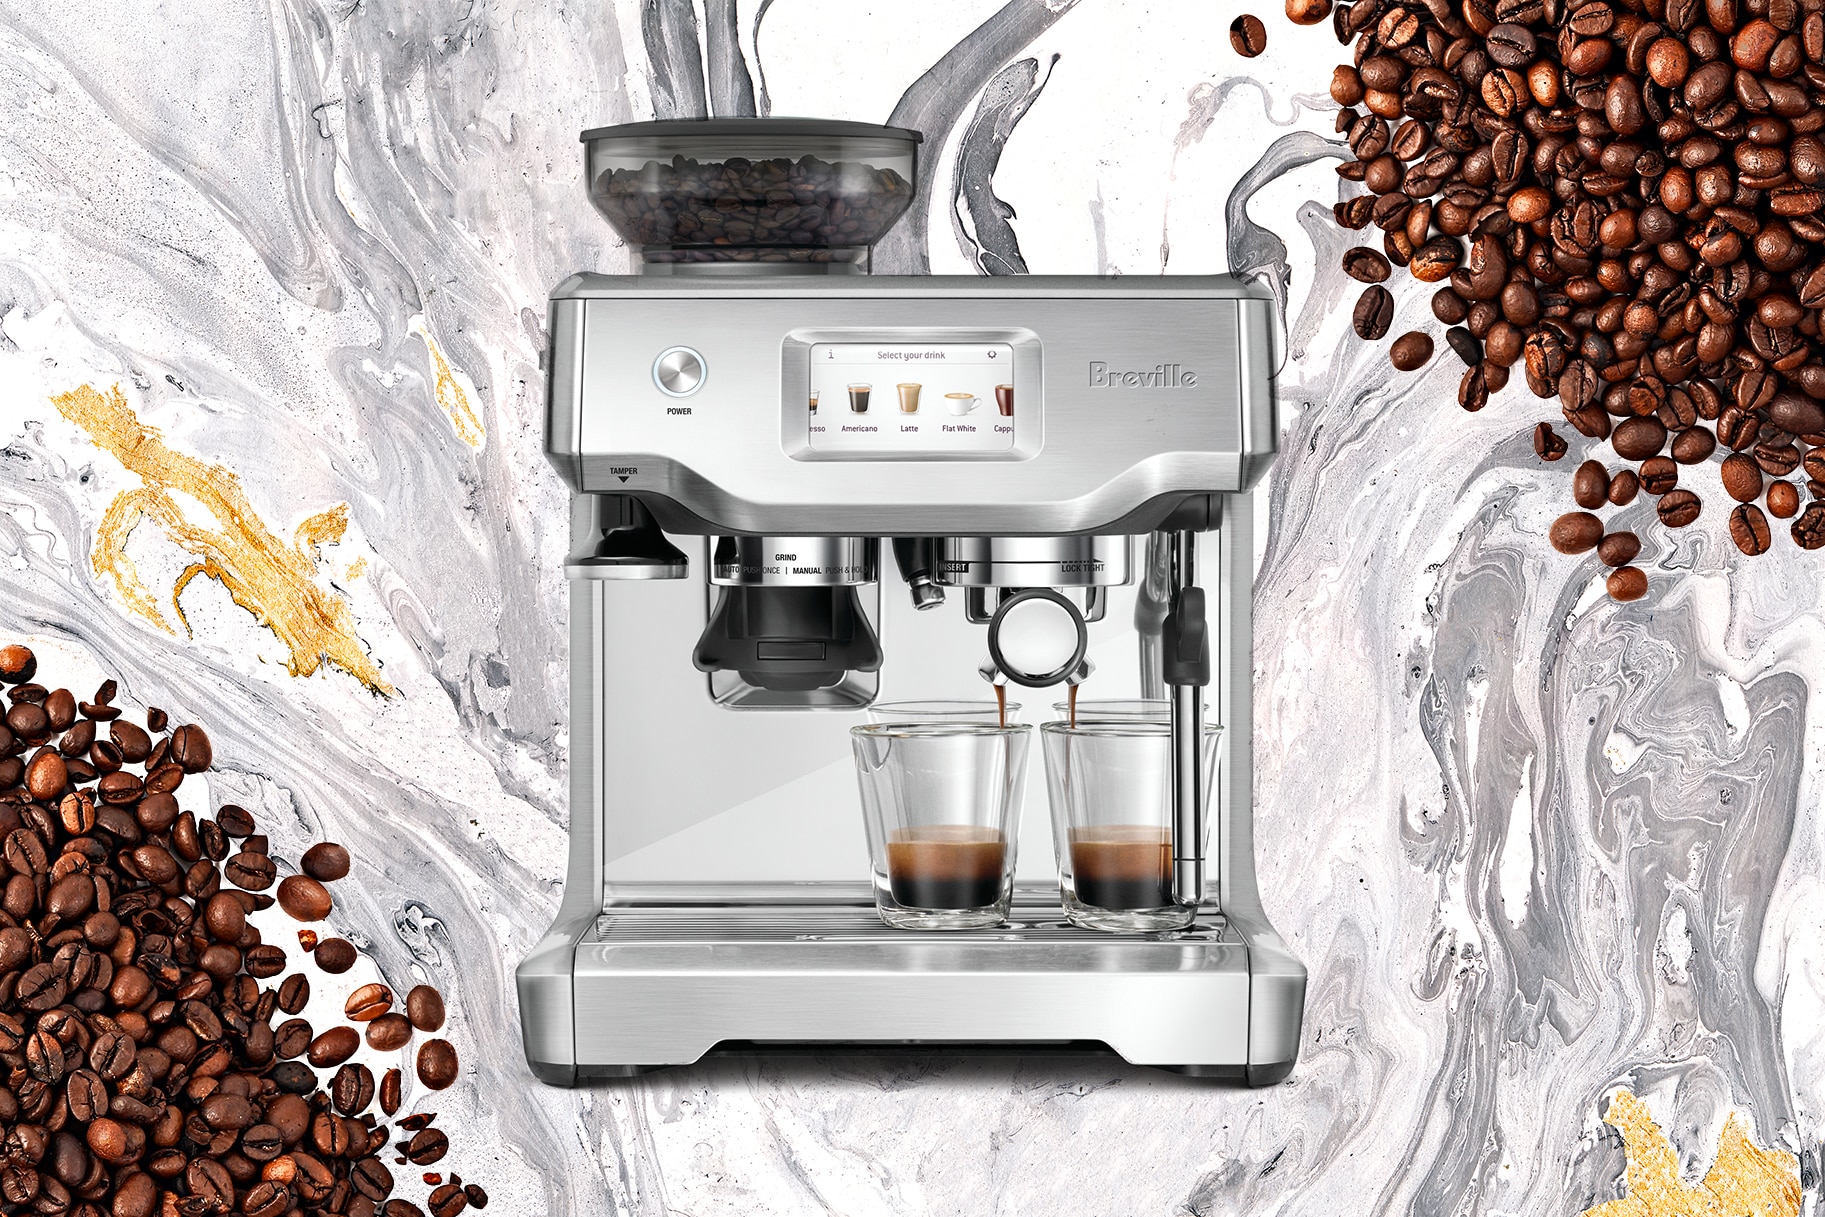 Barista Express - All In One Espresso Machine, Breville